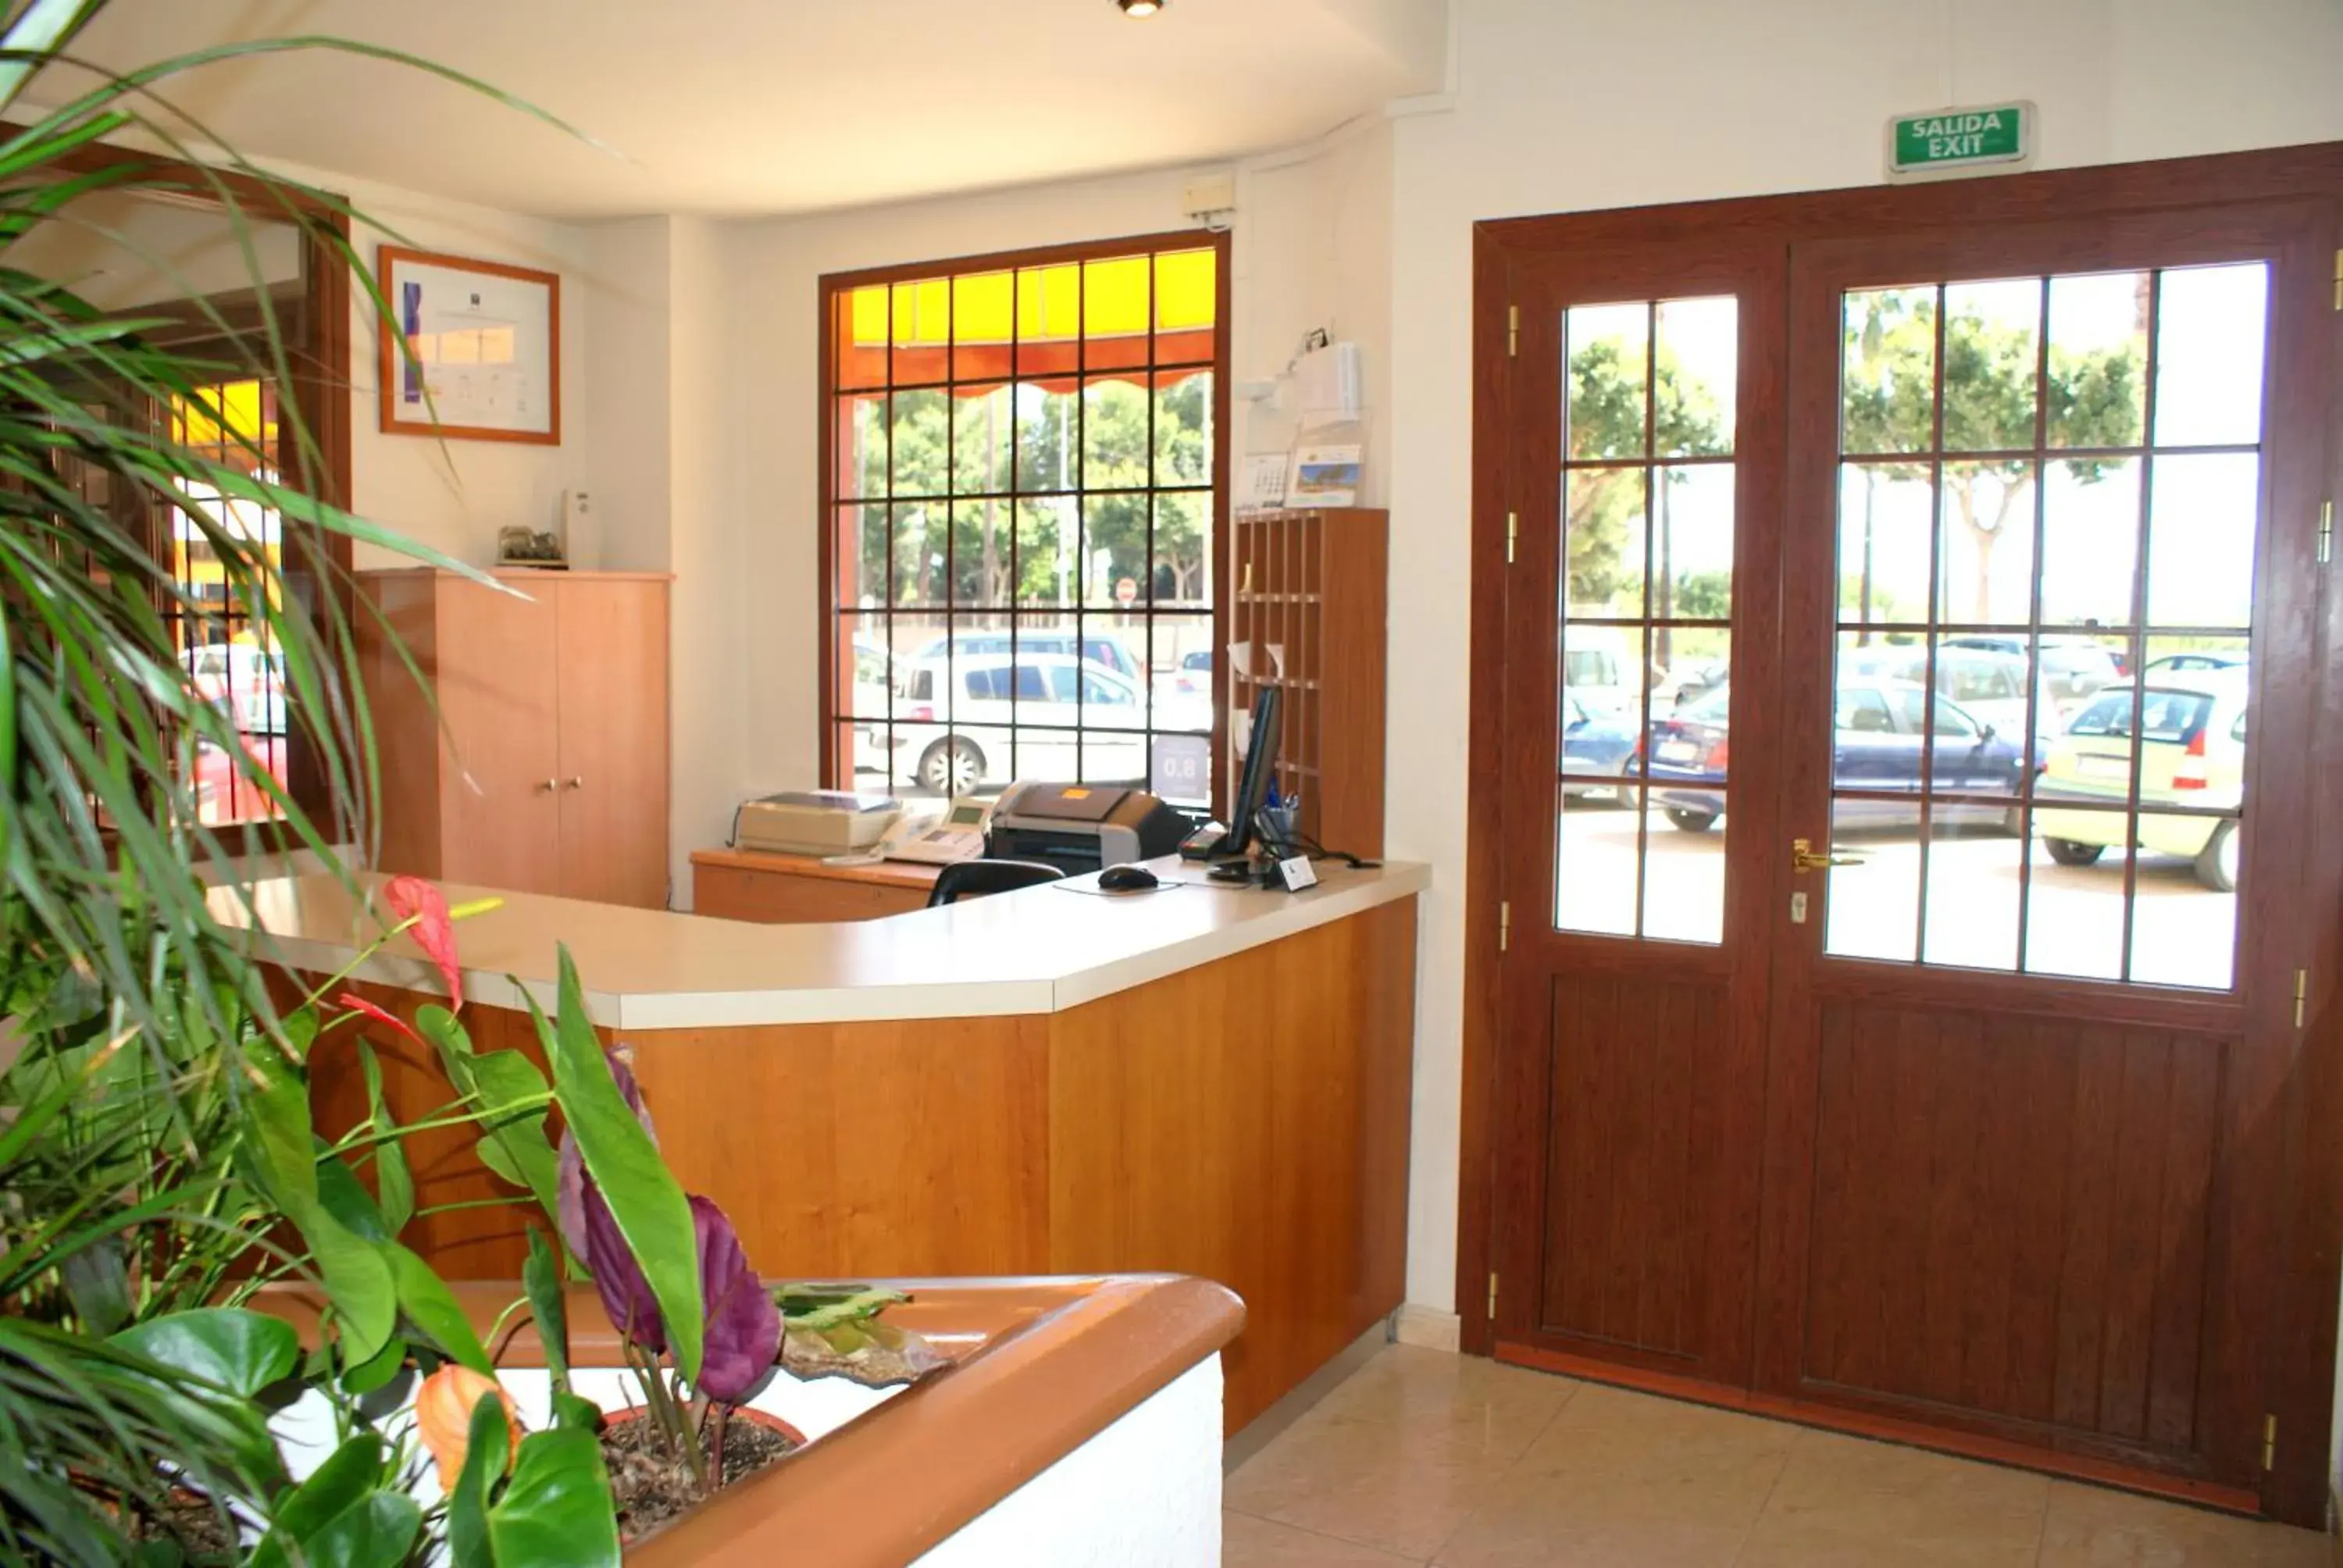 Lobby or reception, Lobby/Reception in Hotel Carabela 2